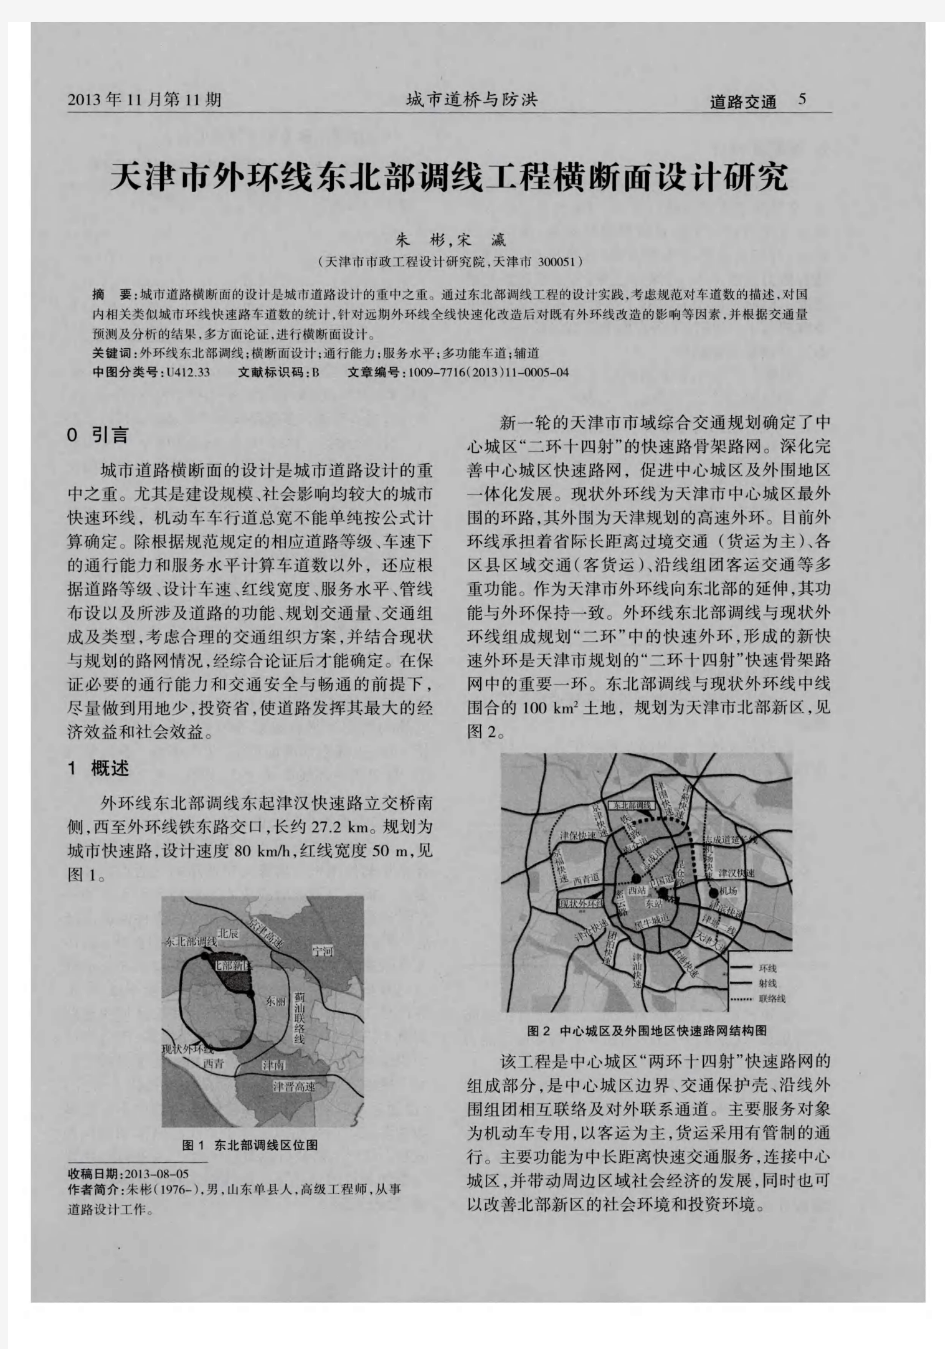 天津市外环线东北部调线工程横断面设计研究